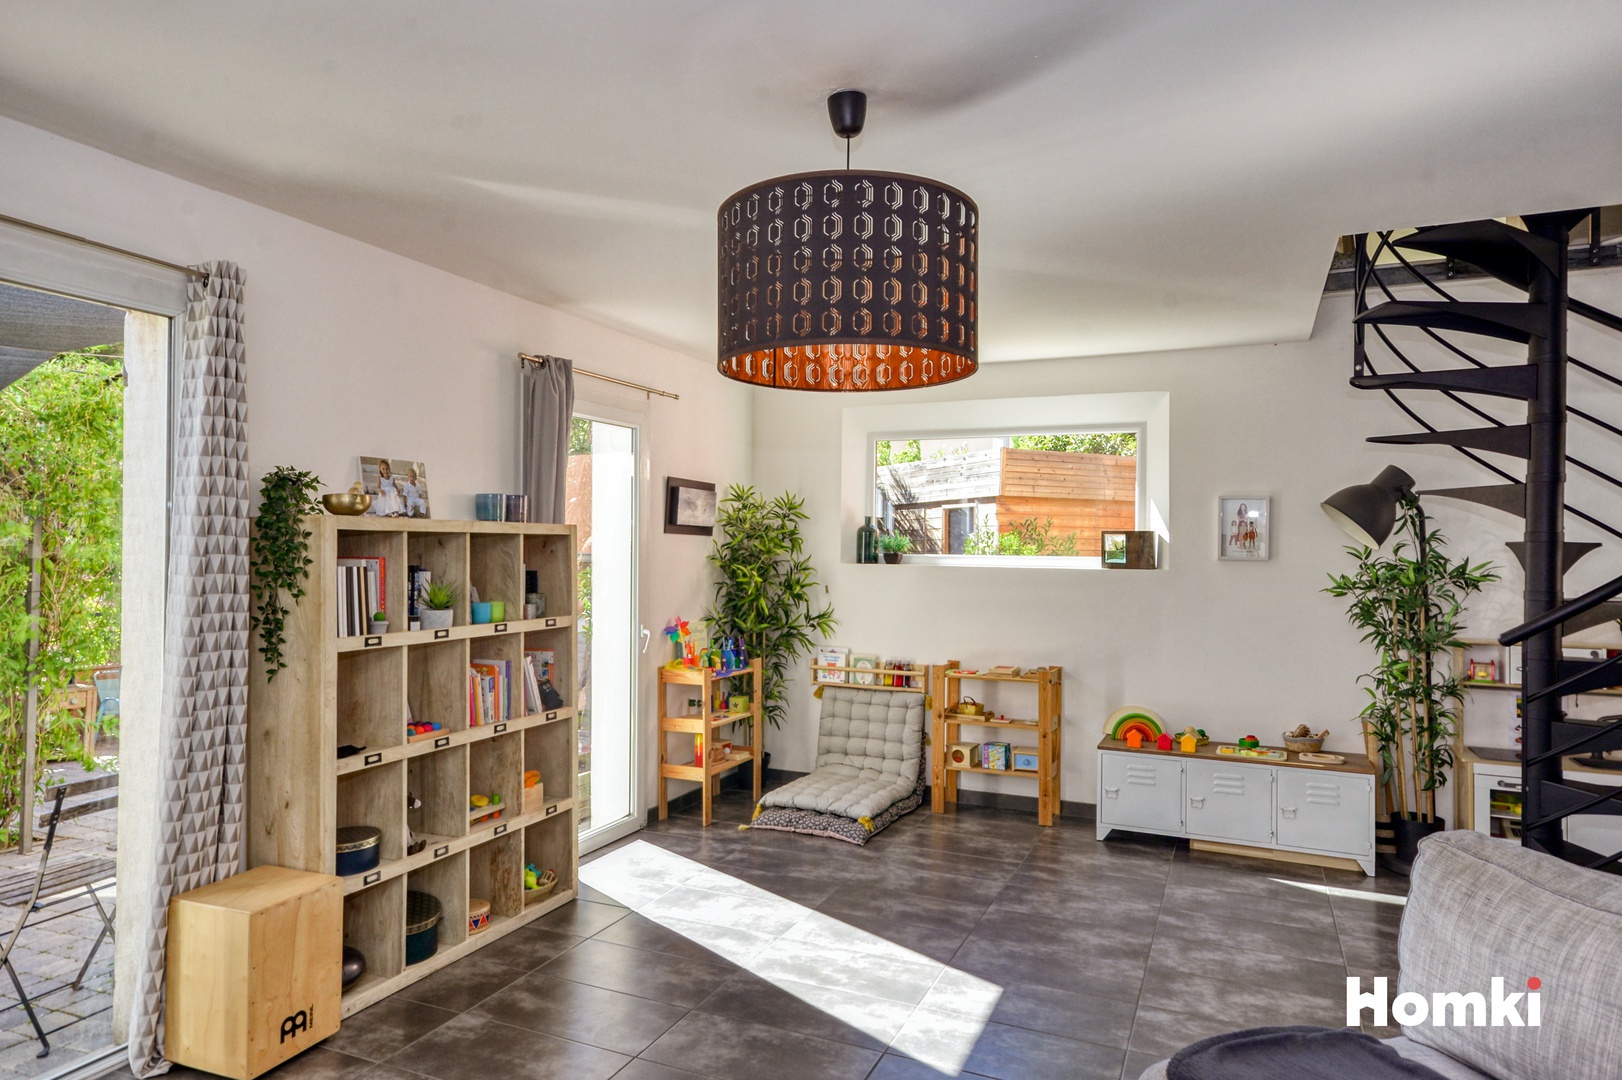 Homki - Vente Maison/villa  de 130.0 m² à Martigues 13500